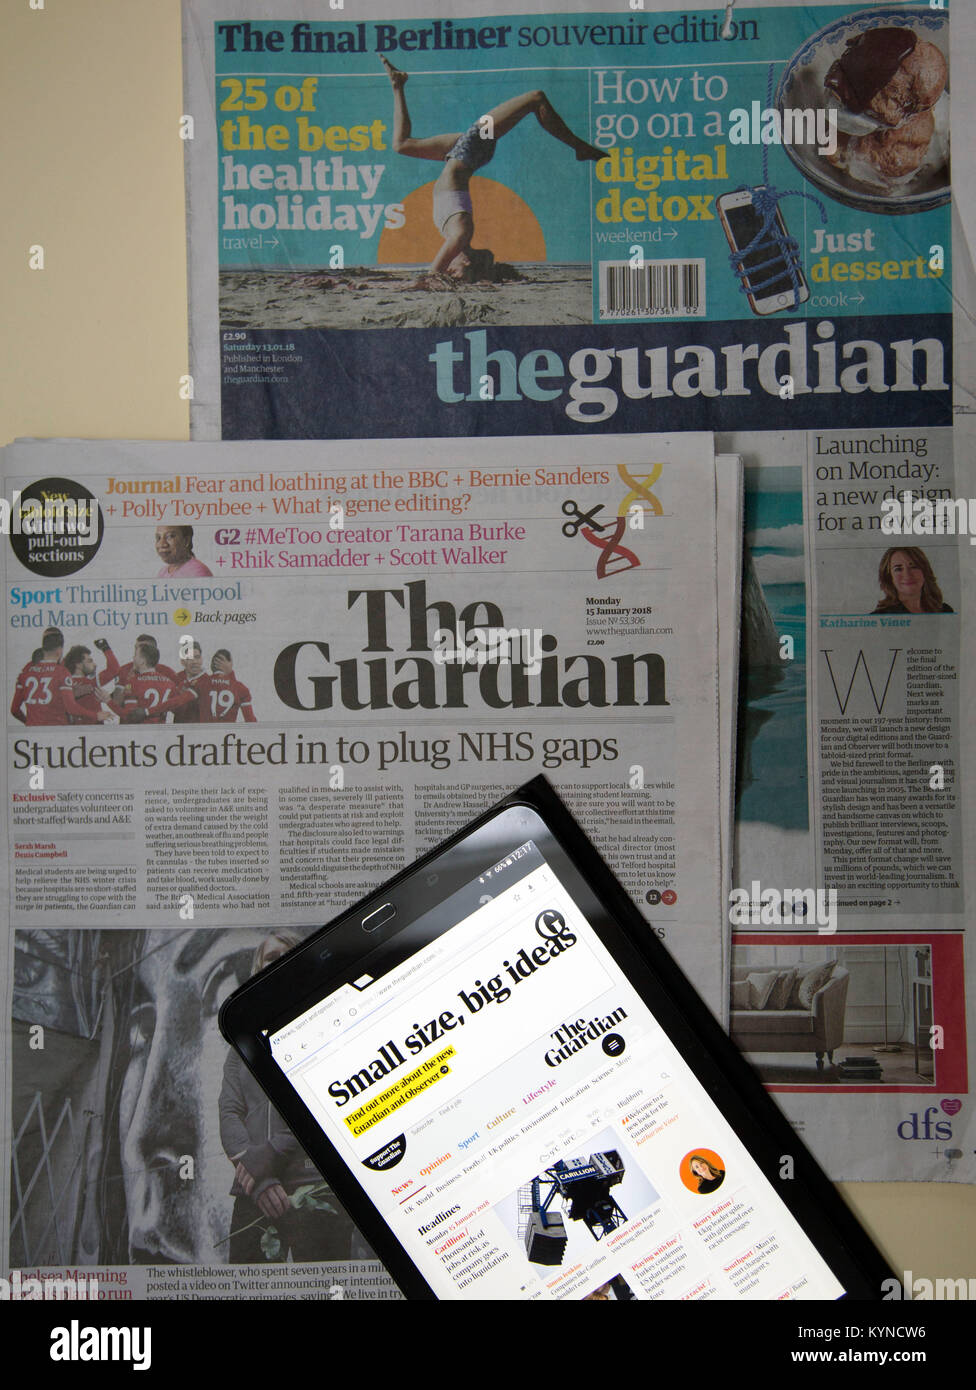 'Guardian' Zeitung wechselt von Berliner in tabloid Format, London: drei Generationen von Editionen gezeigt - Endrunde Berliner, erste Tabloid und online Stockfoto